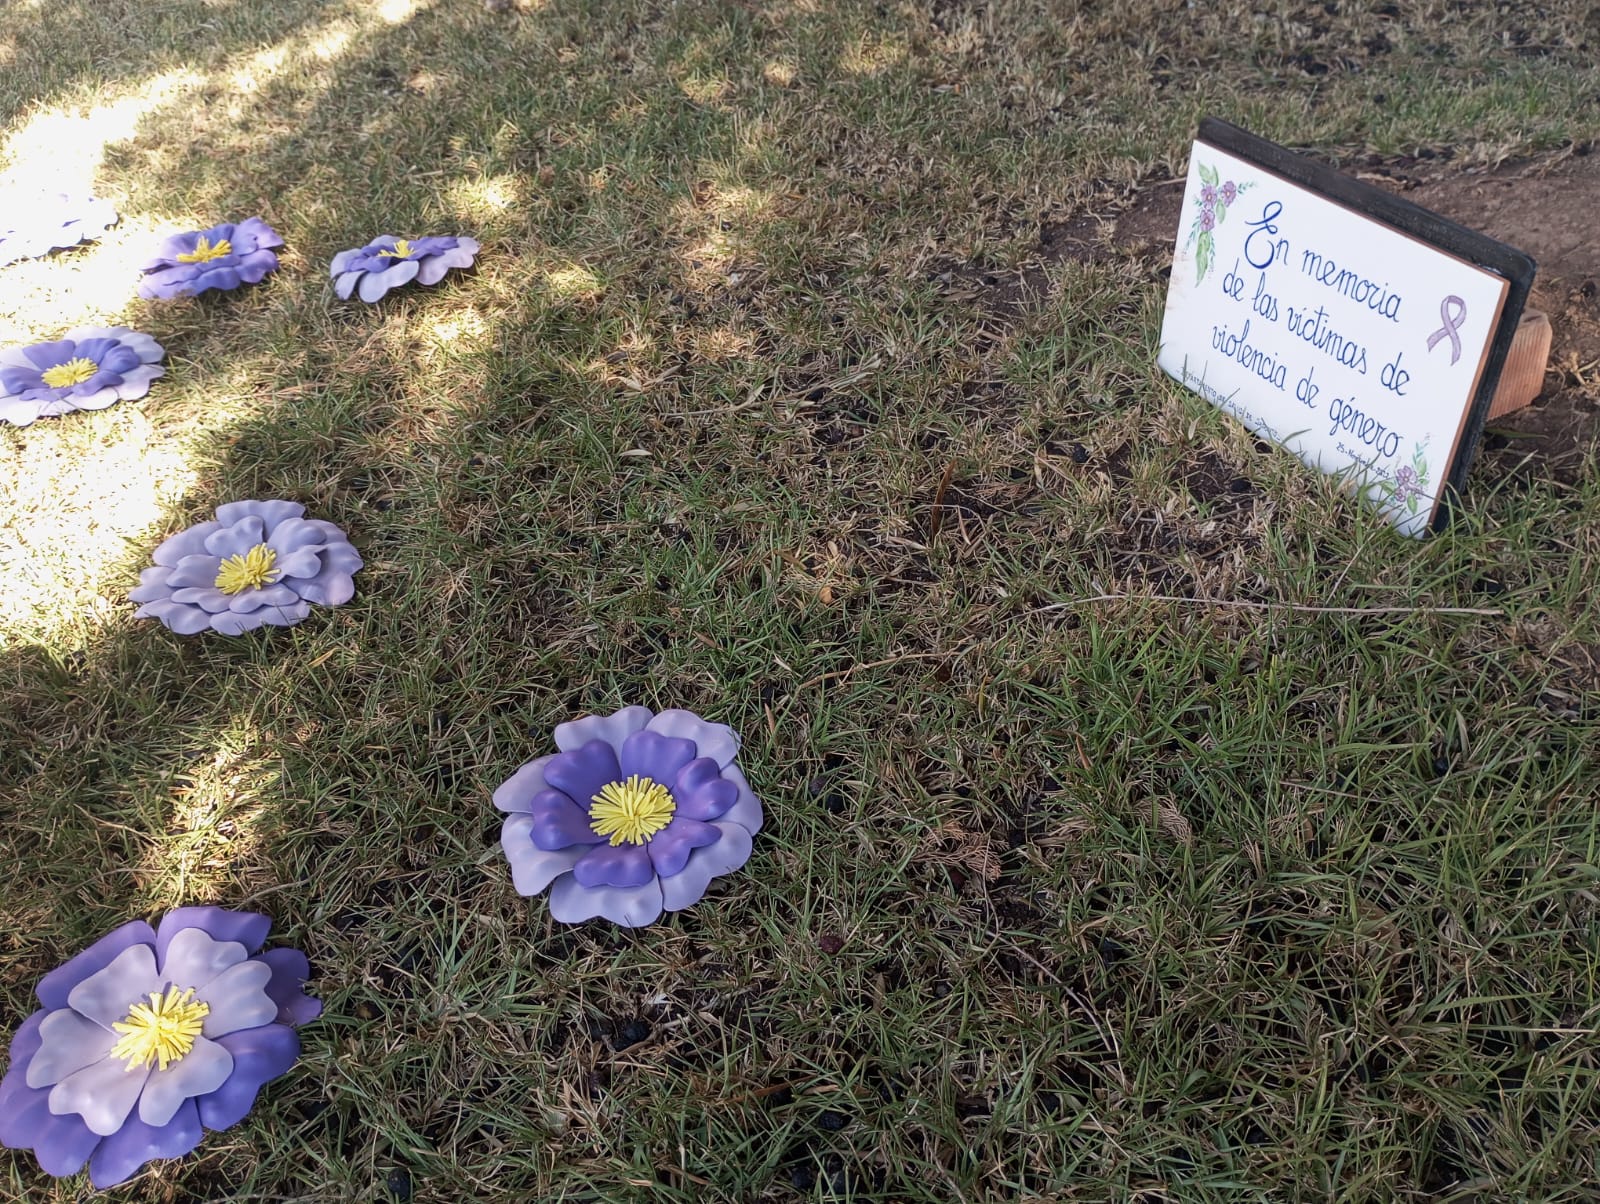 Fotos de papel clavadas en el suelo junto a placa conmemorativa por las víctimas 